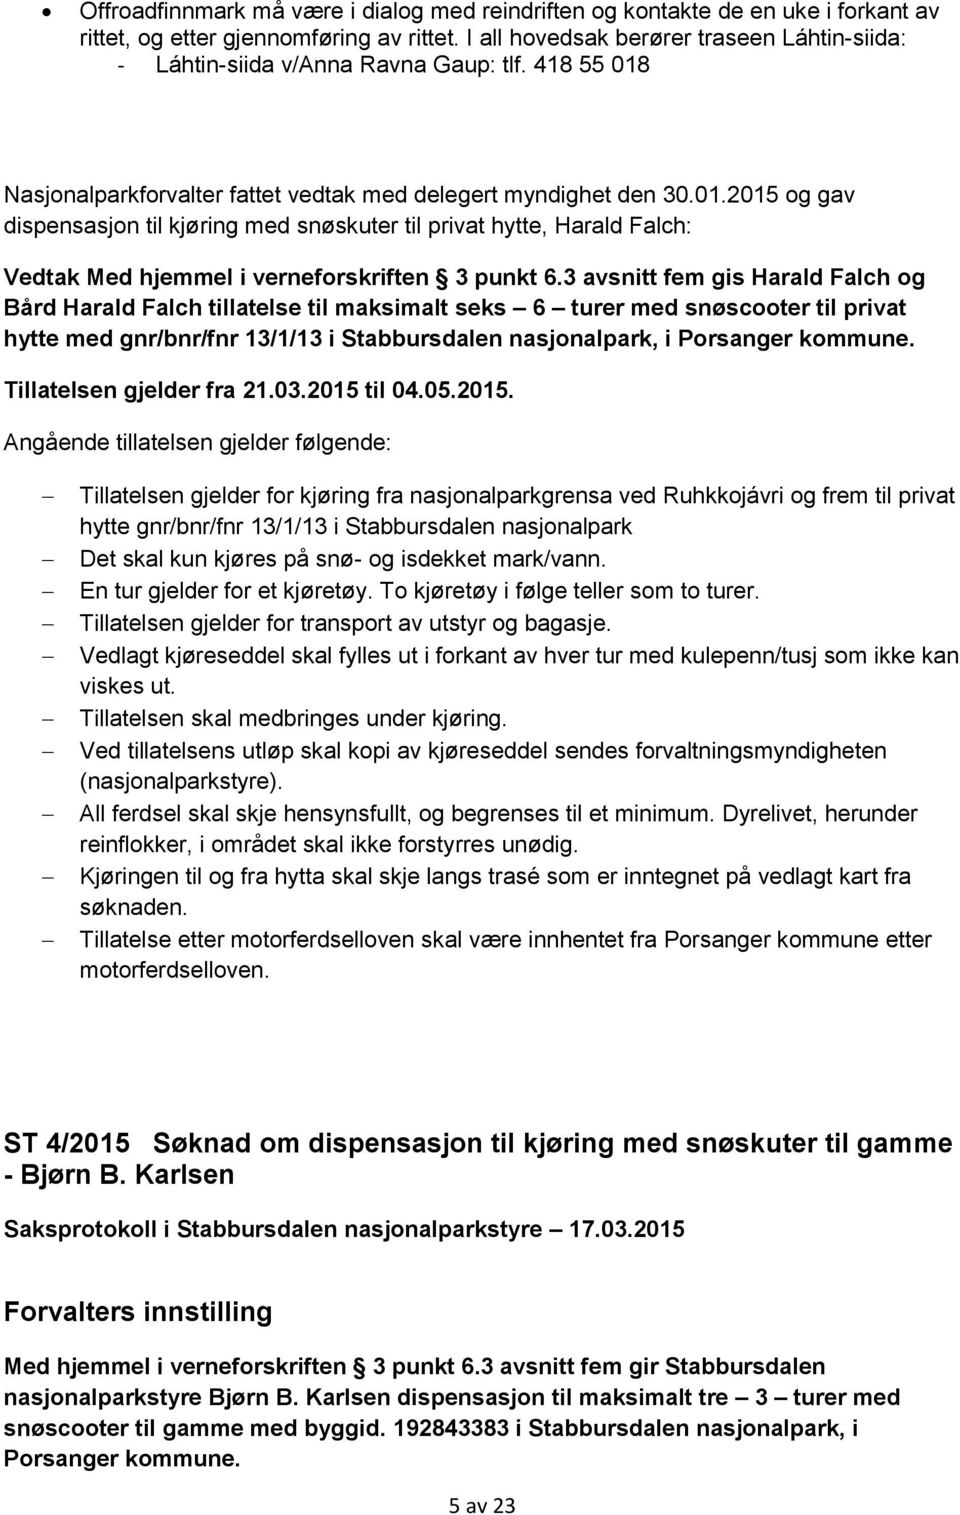 Nasjonalparkforvalter fattet vedtak med delegert myndighet den 30.01.2015 og gav dispensasjon til kjøring med snøskuter til privat hytte, Harald Falch: Vedtak Med hjemmel i verneforskriften 3 punkt 6.